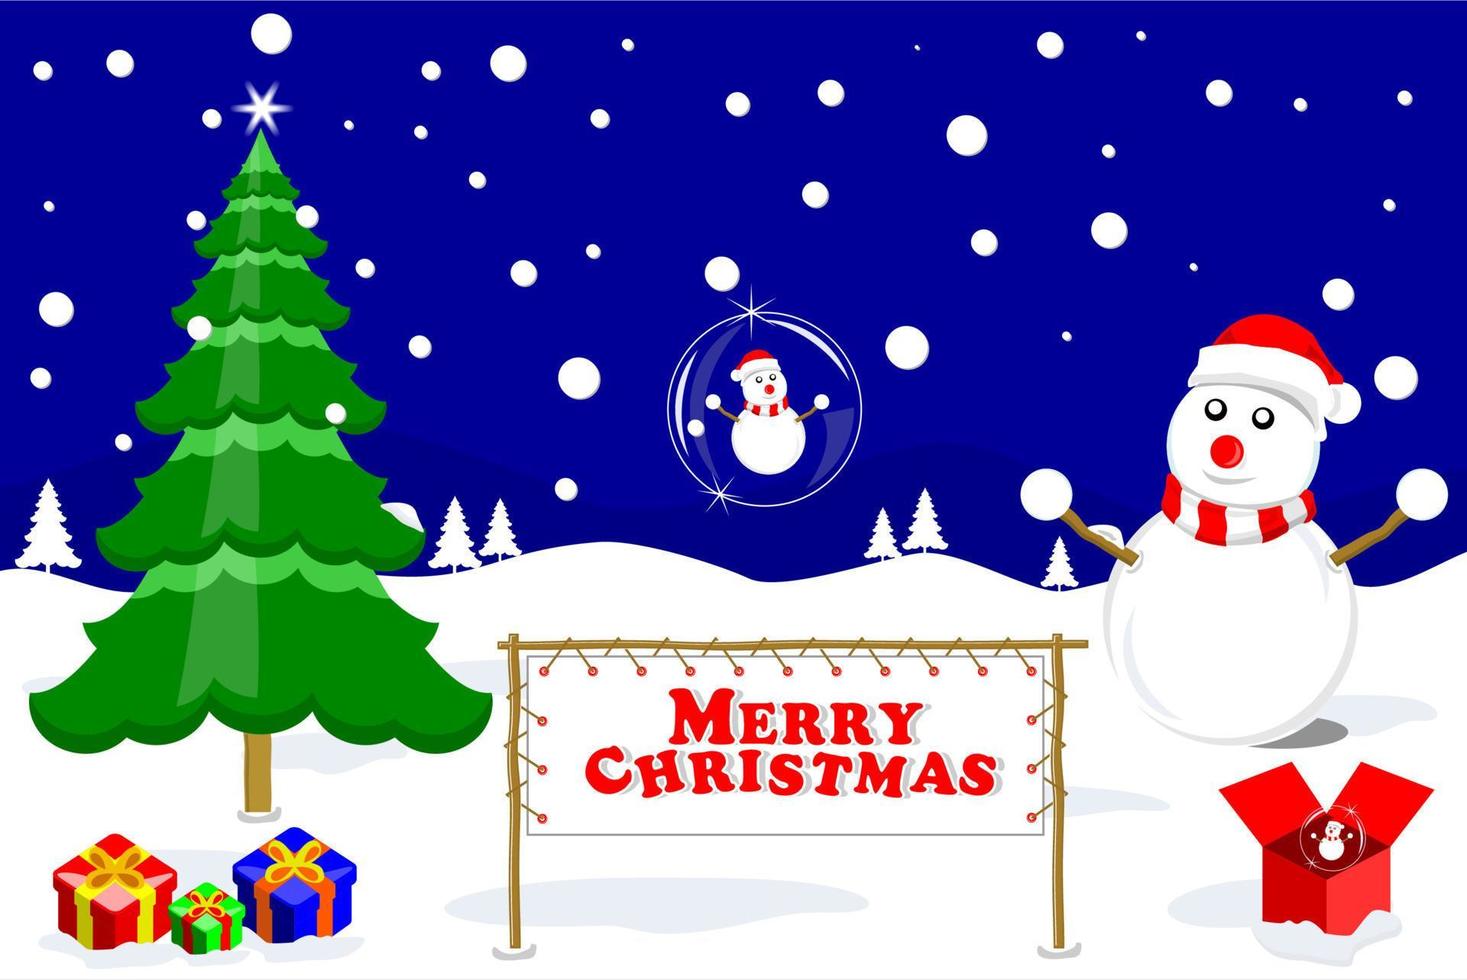 vrolijk kerstfeest en glazen bol met sneeuwpop op blauwe hemelachtergrond, vectorillustratie vector